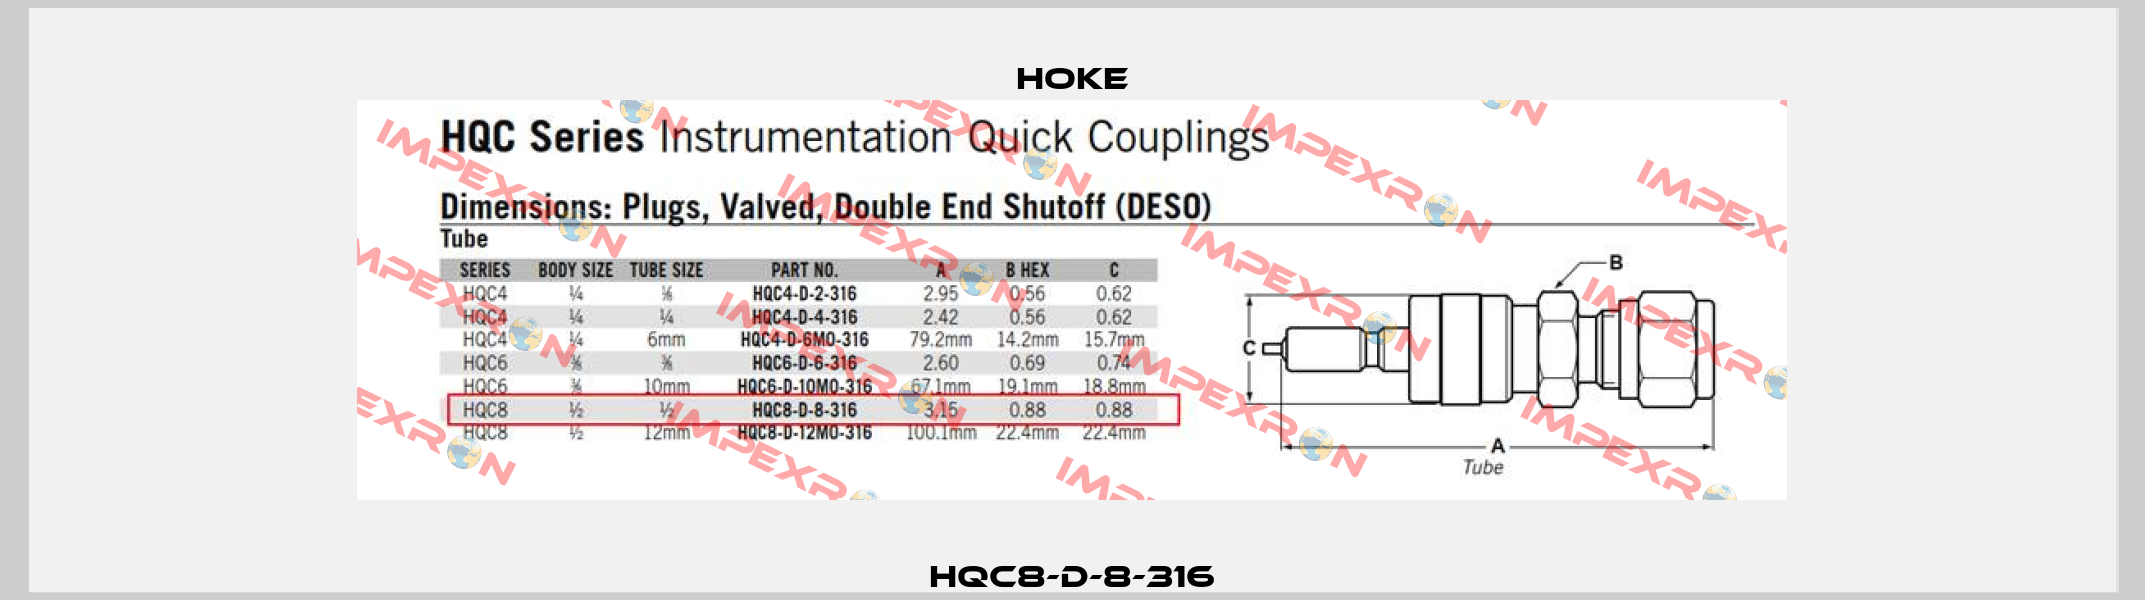 HQC8-D-8-316 Hoke